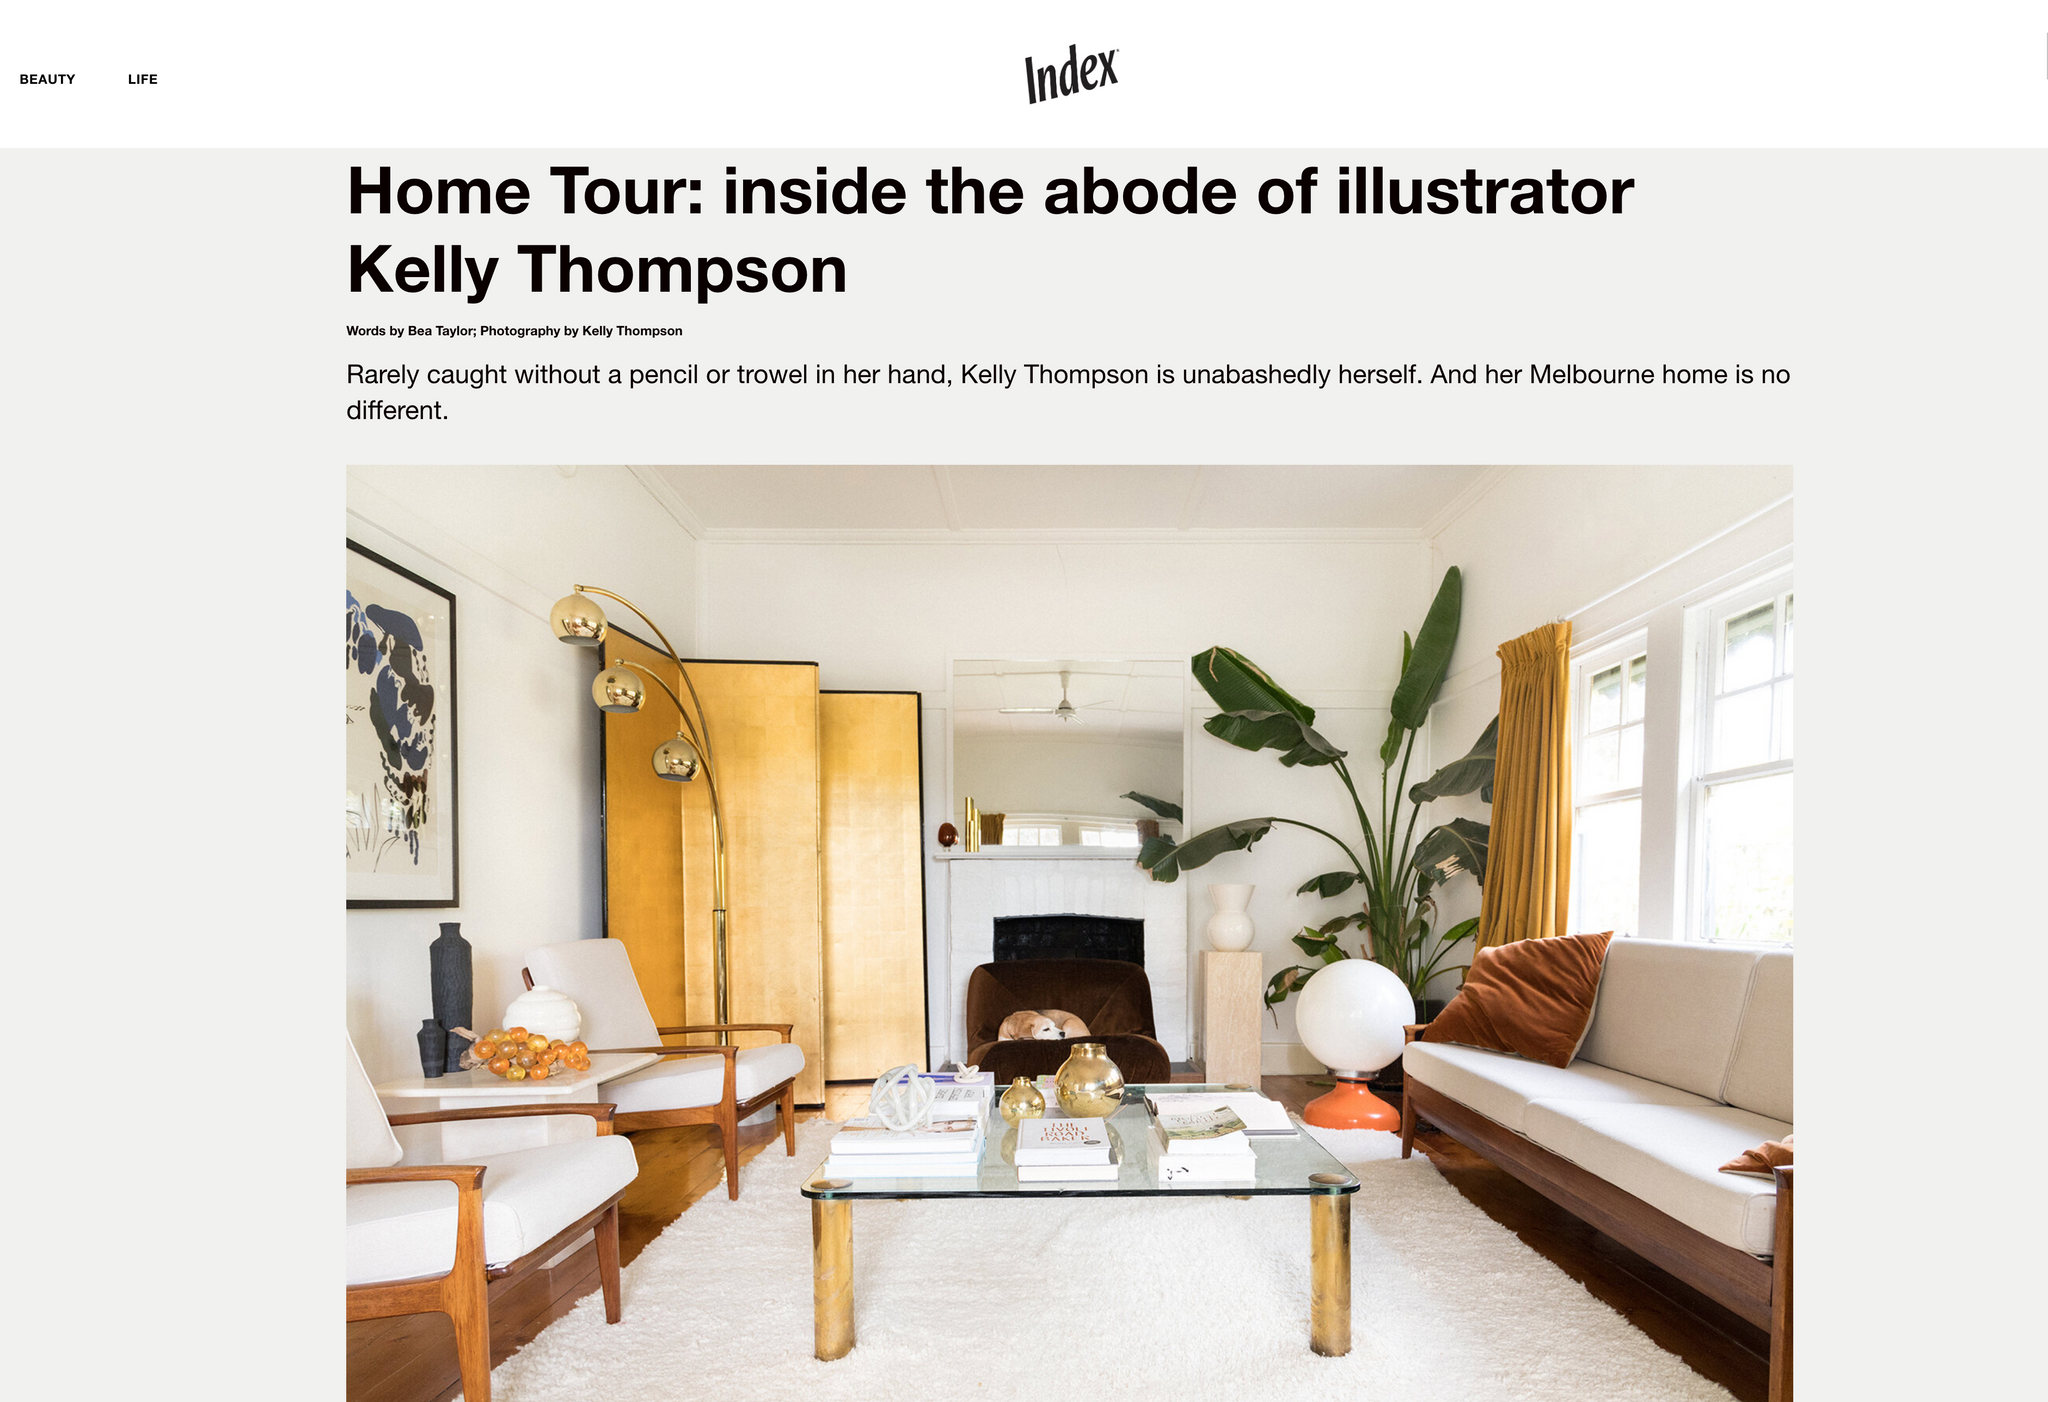 Kelly Thompson Illustrator Home Tour Index Magazine New Zealand